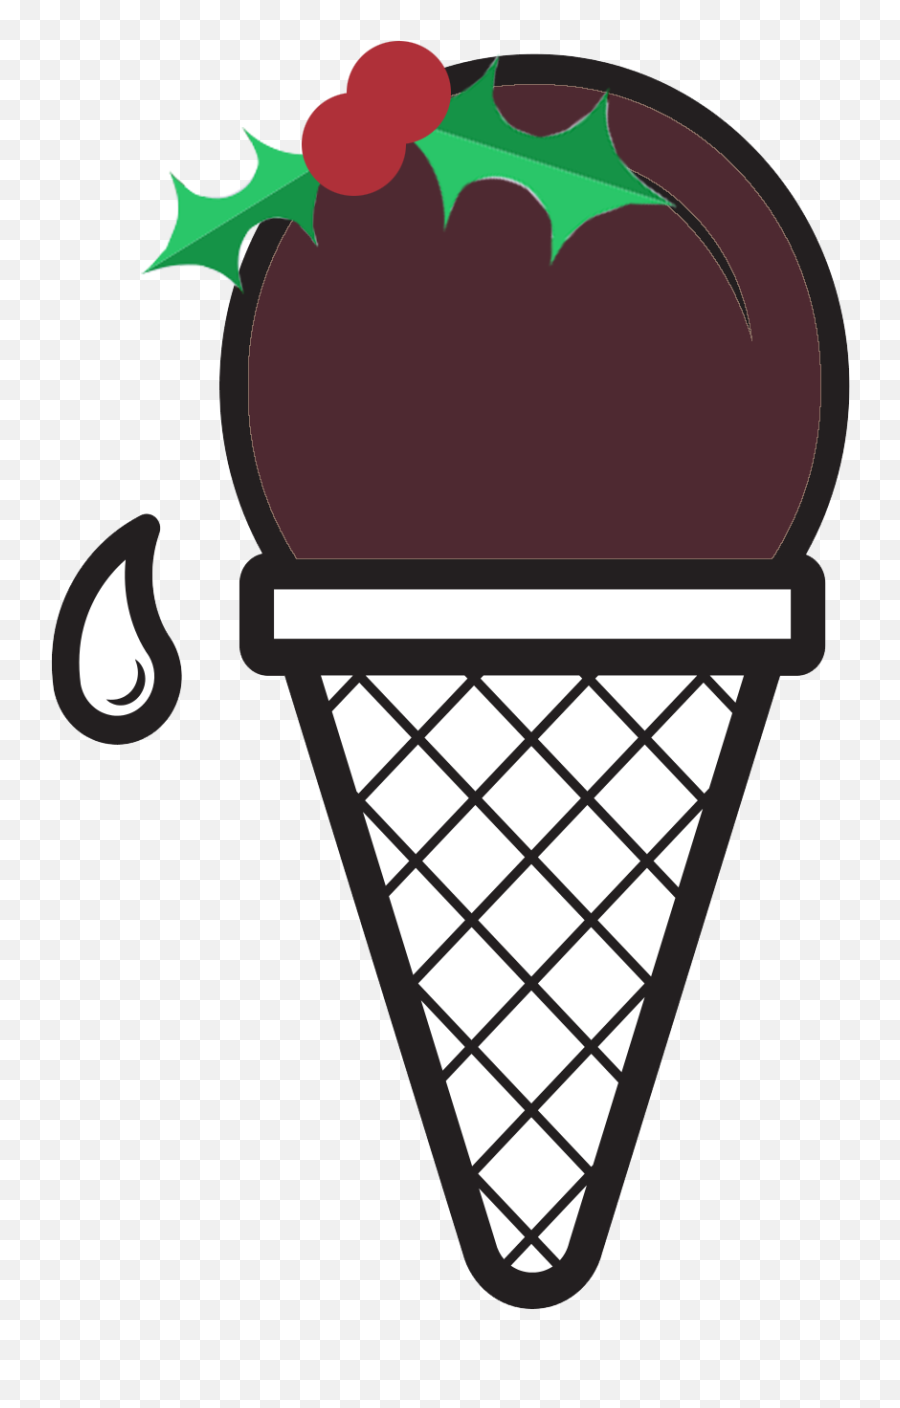 Icecream Clipart Tub - Ice Cream Maker Transparent Cartoon Christmas Ice Cream Clipart Emoji,Ice Cream Clipart